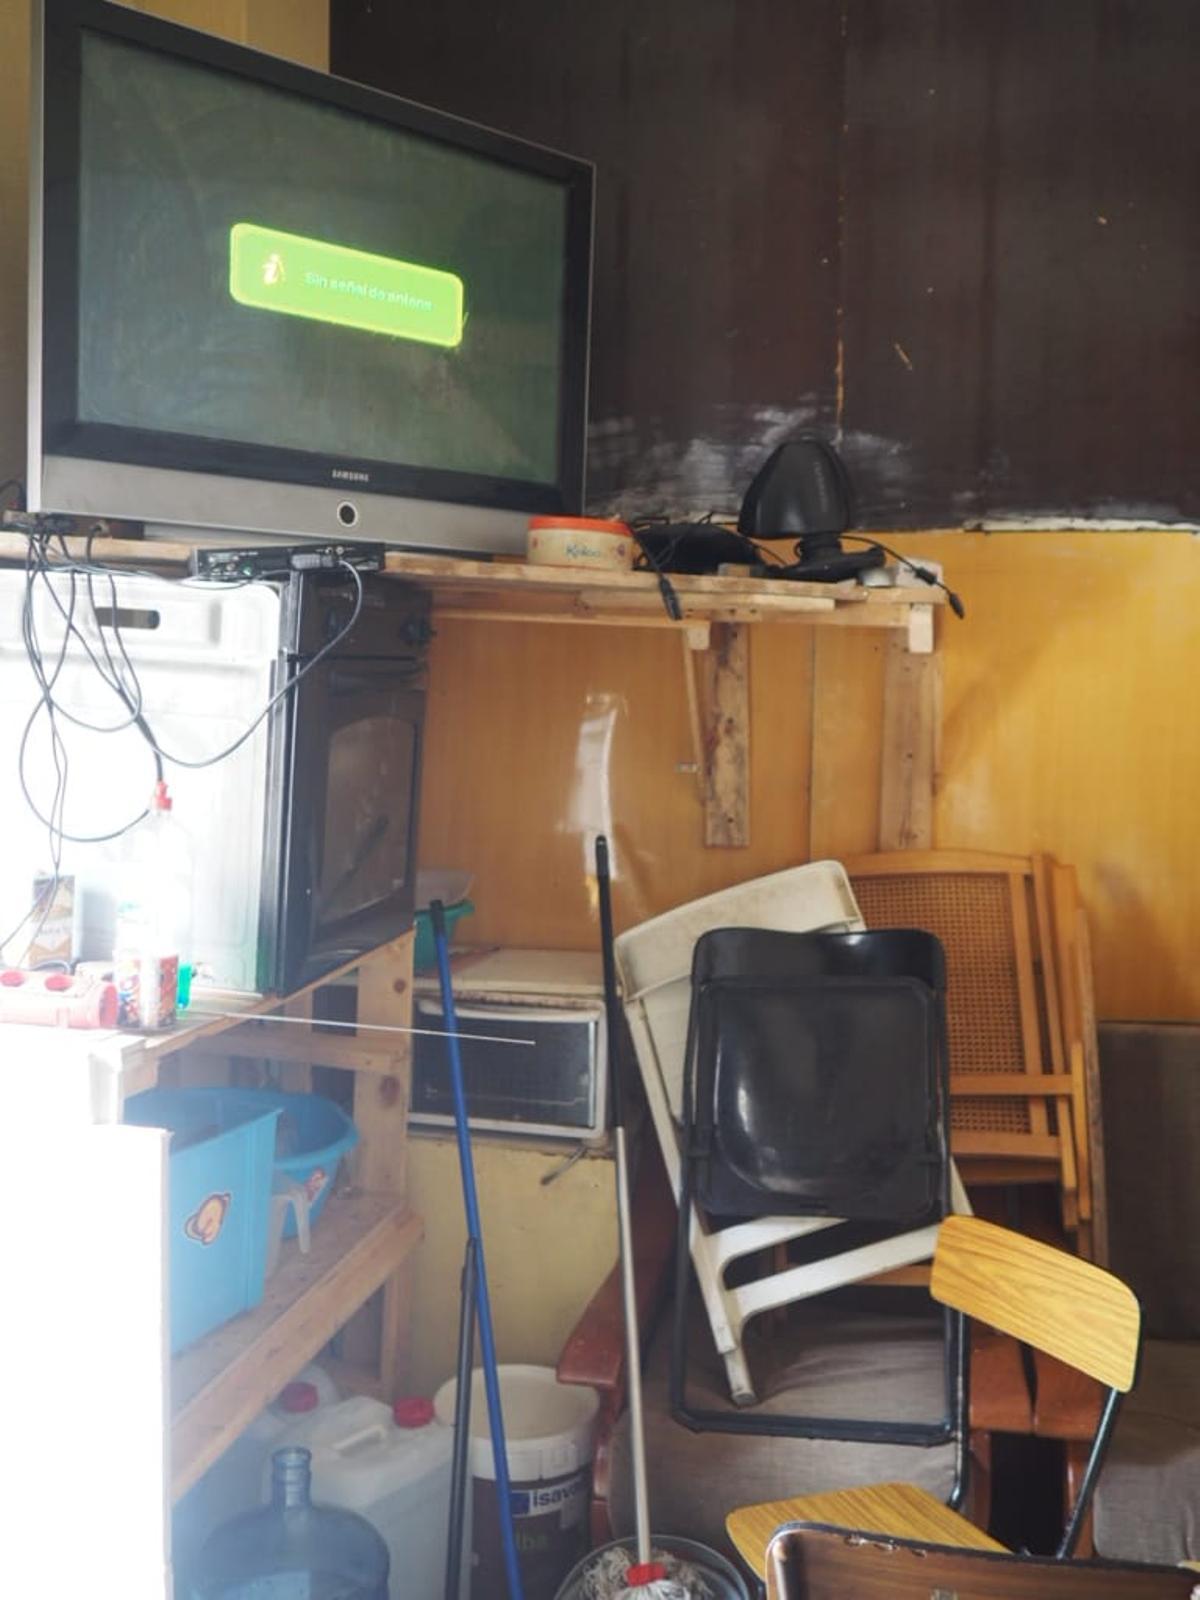 Un televisor y otros objetos en el interior de la nave ocupada.